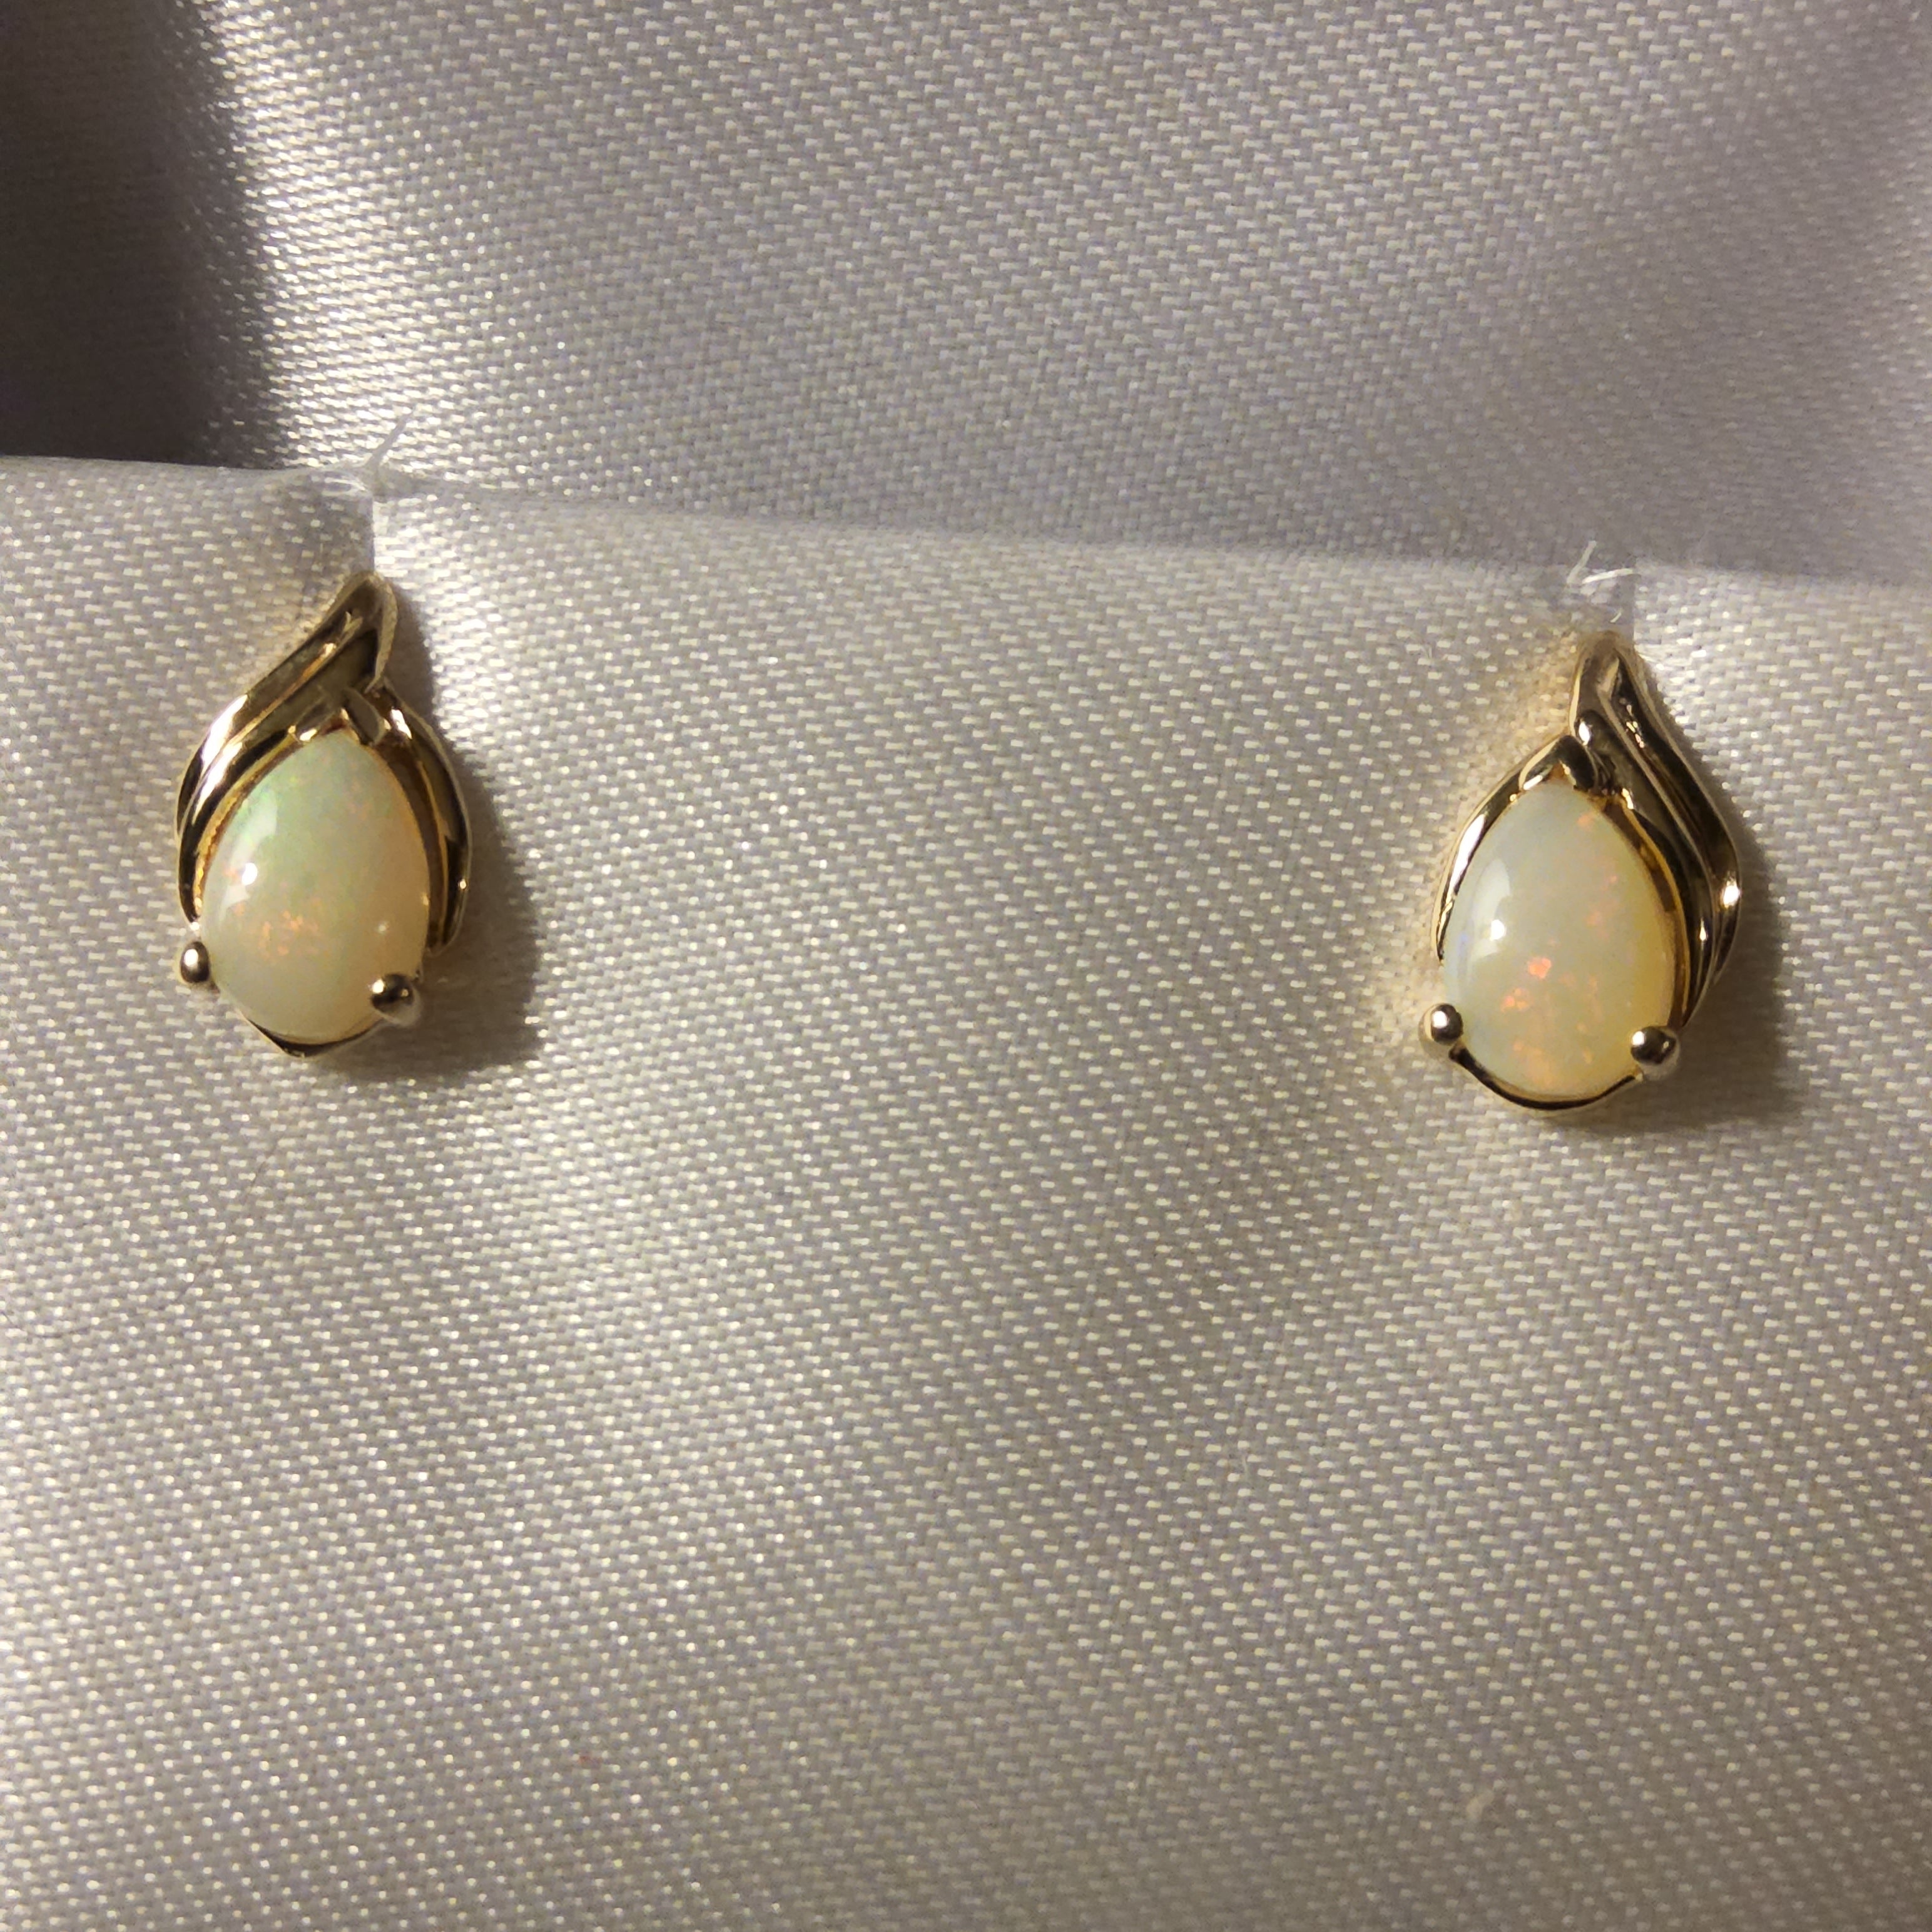 Opal Earrings - Pear Shaped Cut